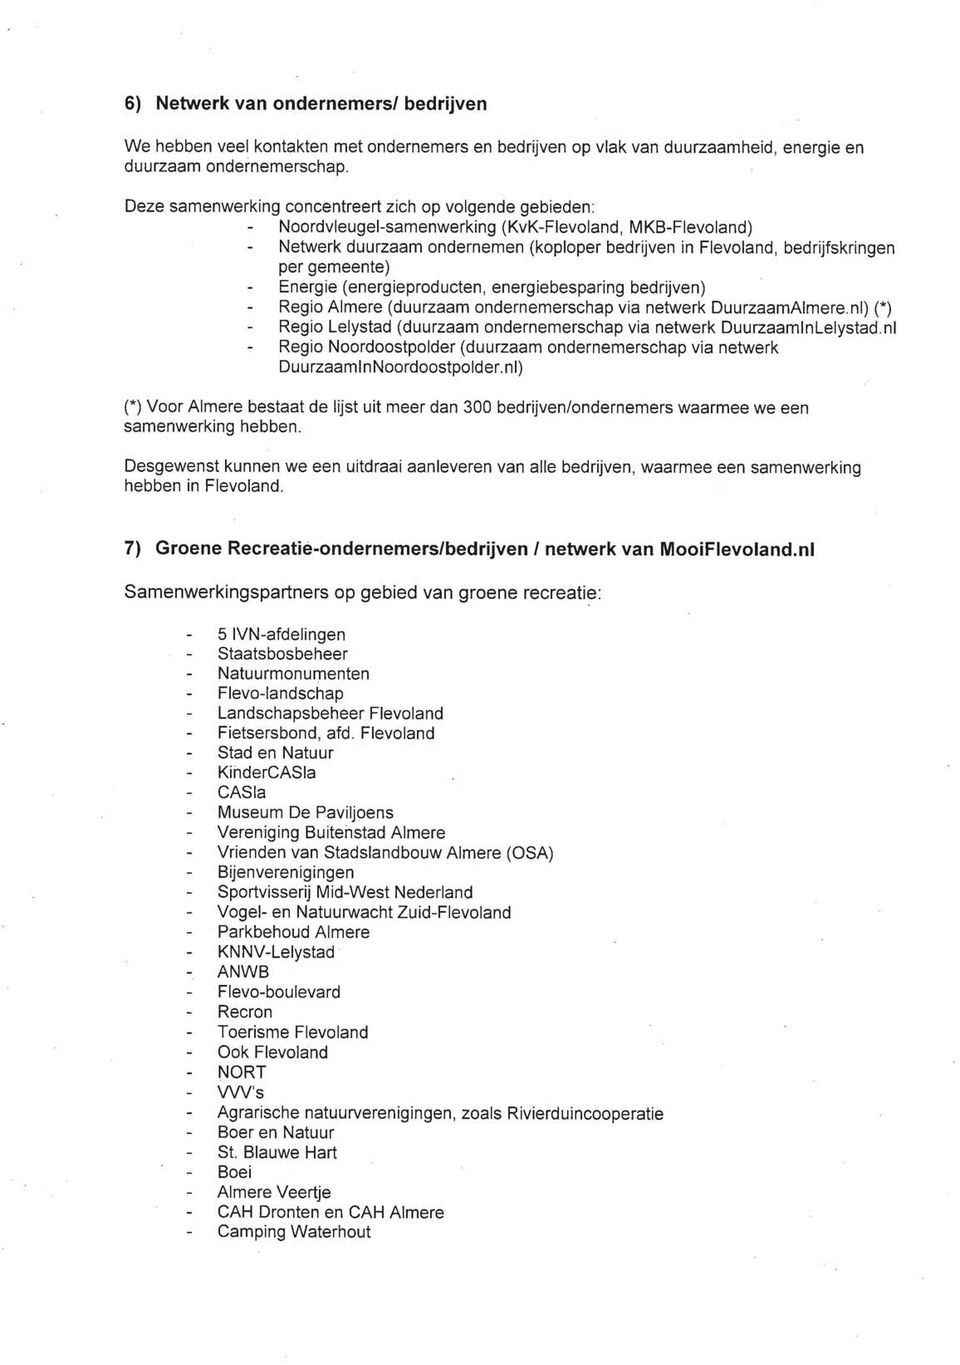 gemeente) Energie (energieproducten, energiebesparing bedrijven) Regio Almere (duurzaam ondernemerschap via netwerk DuurzaamAlmere.